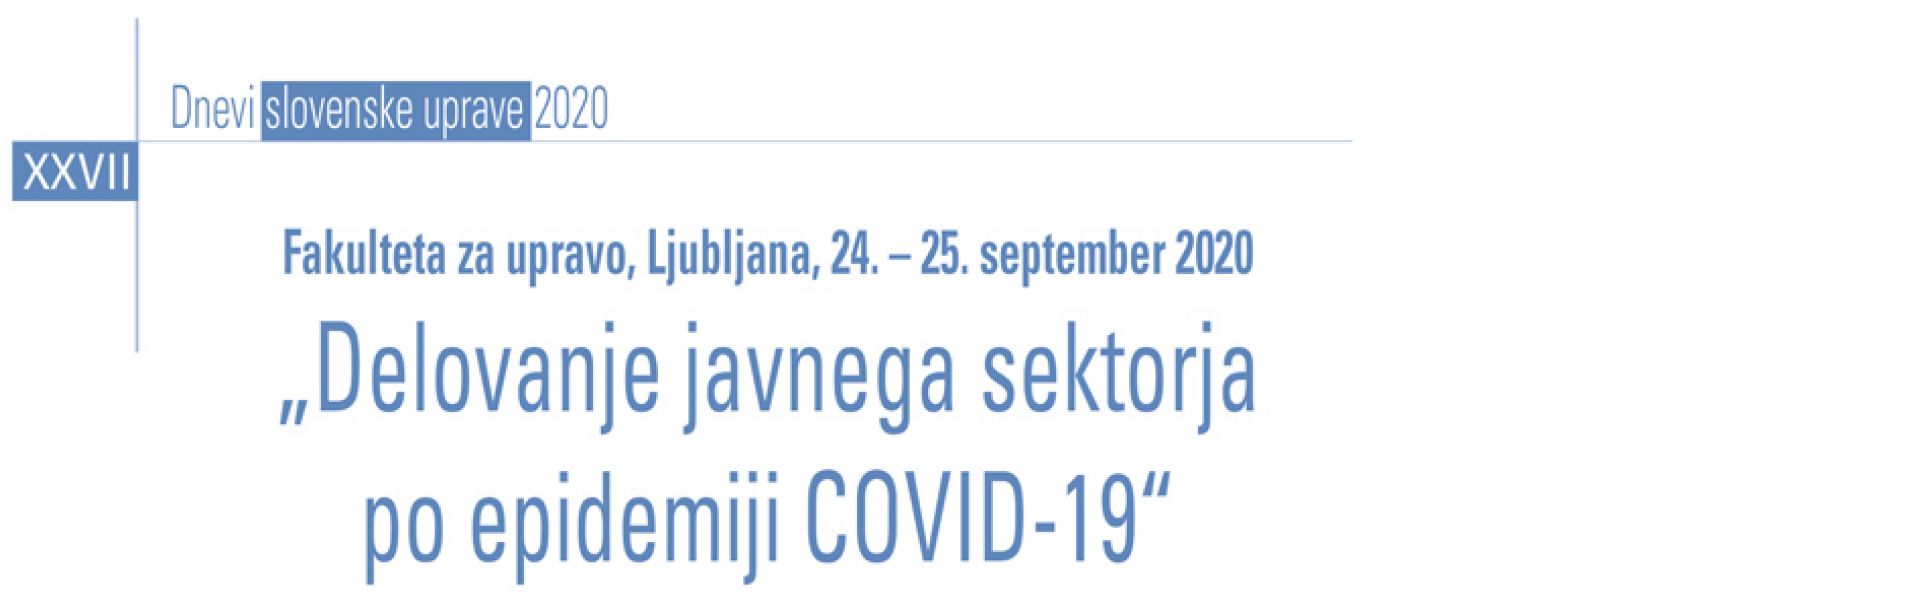 XXVII. Dnevi slovenske uprave (24. in 25. 9. 2020)